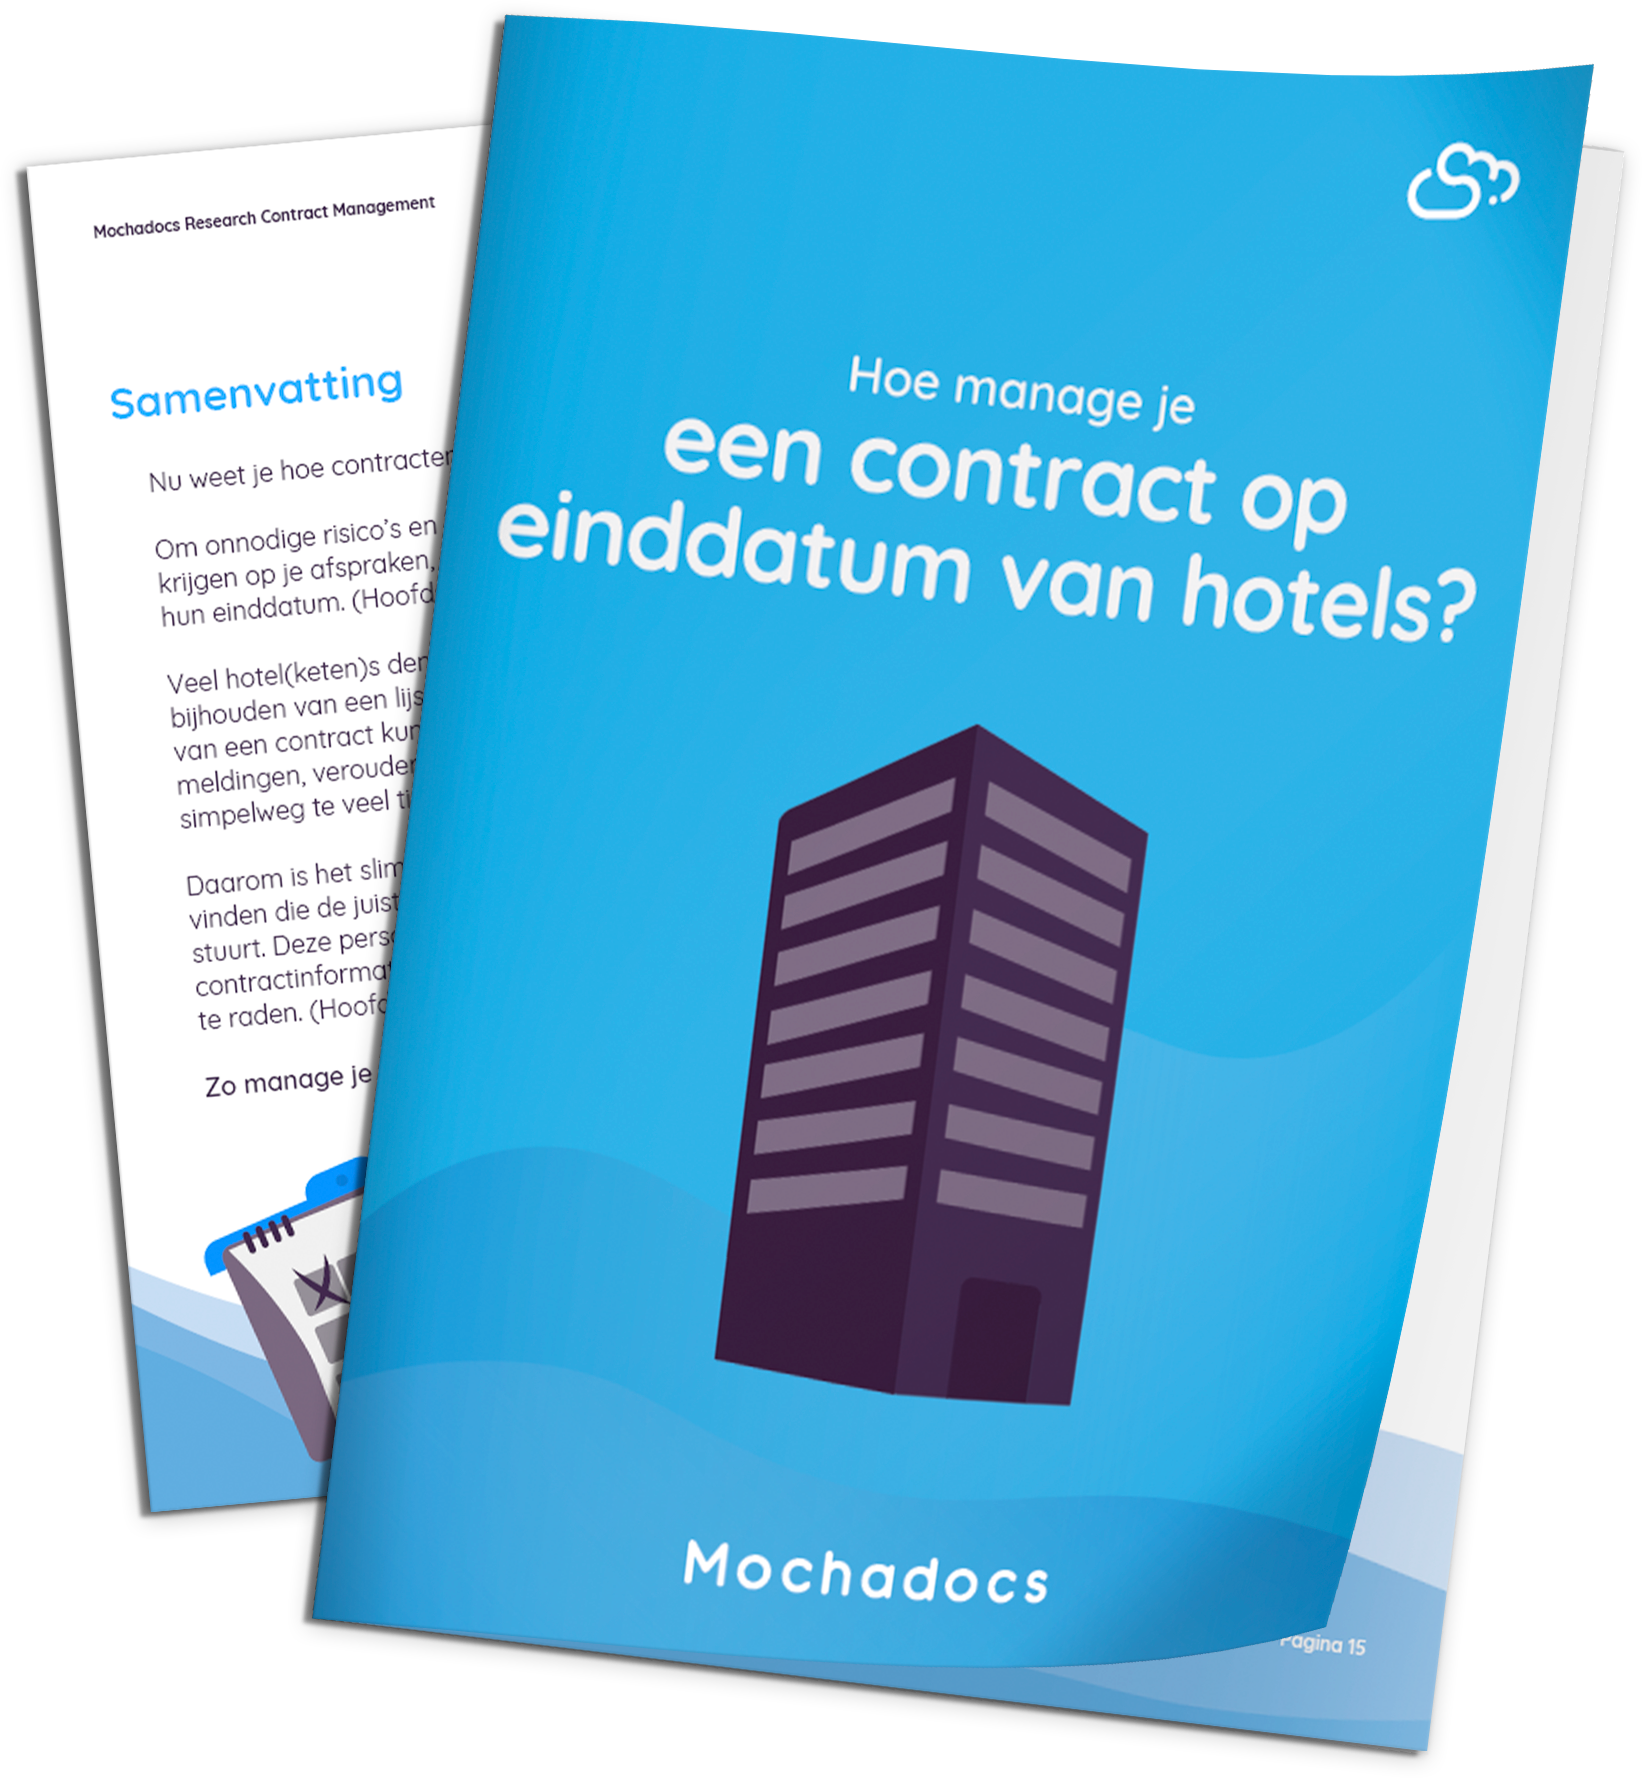 Mochadocs - Contract Management - eBook - Hoe manage je een contract op einddatum voor hotels?